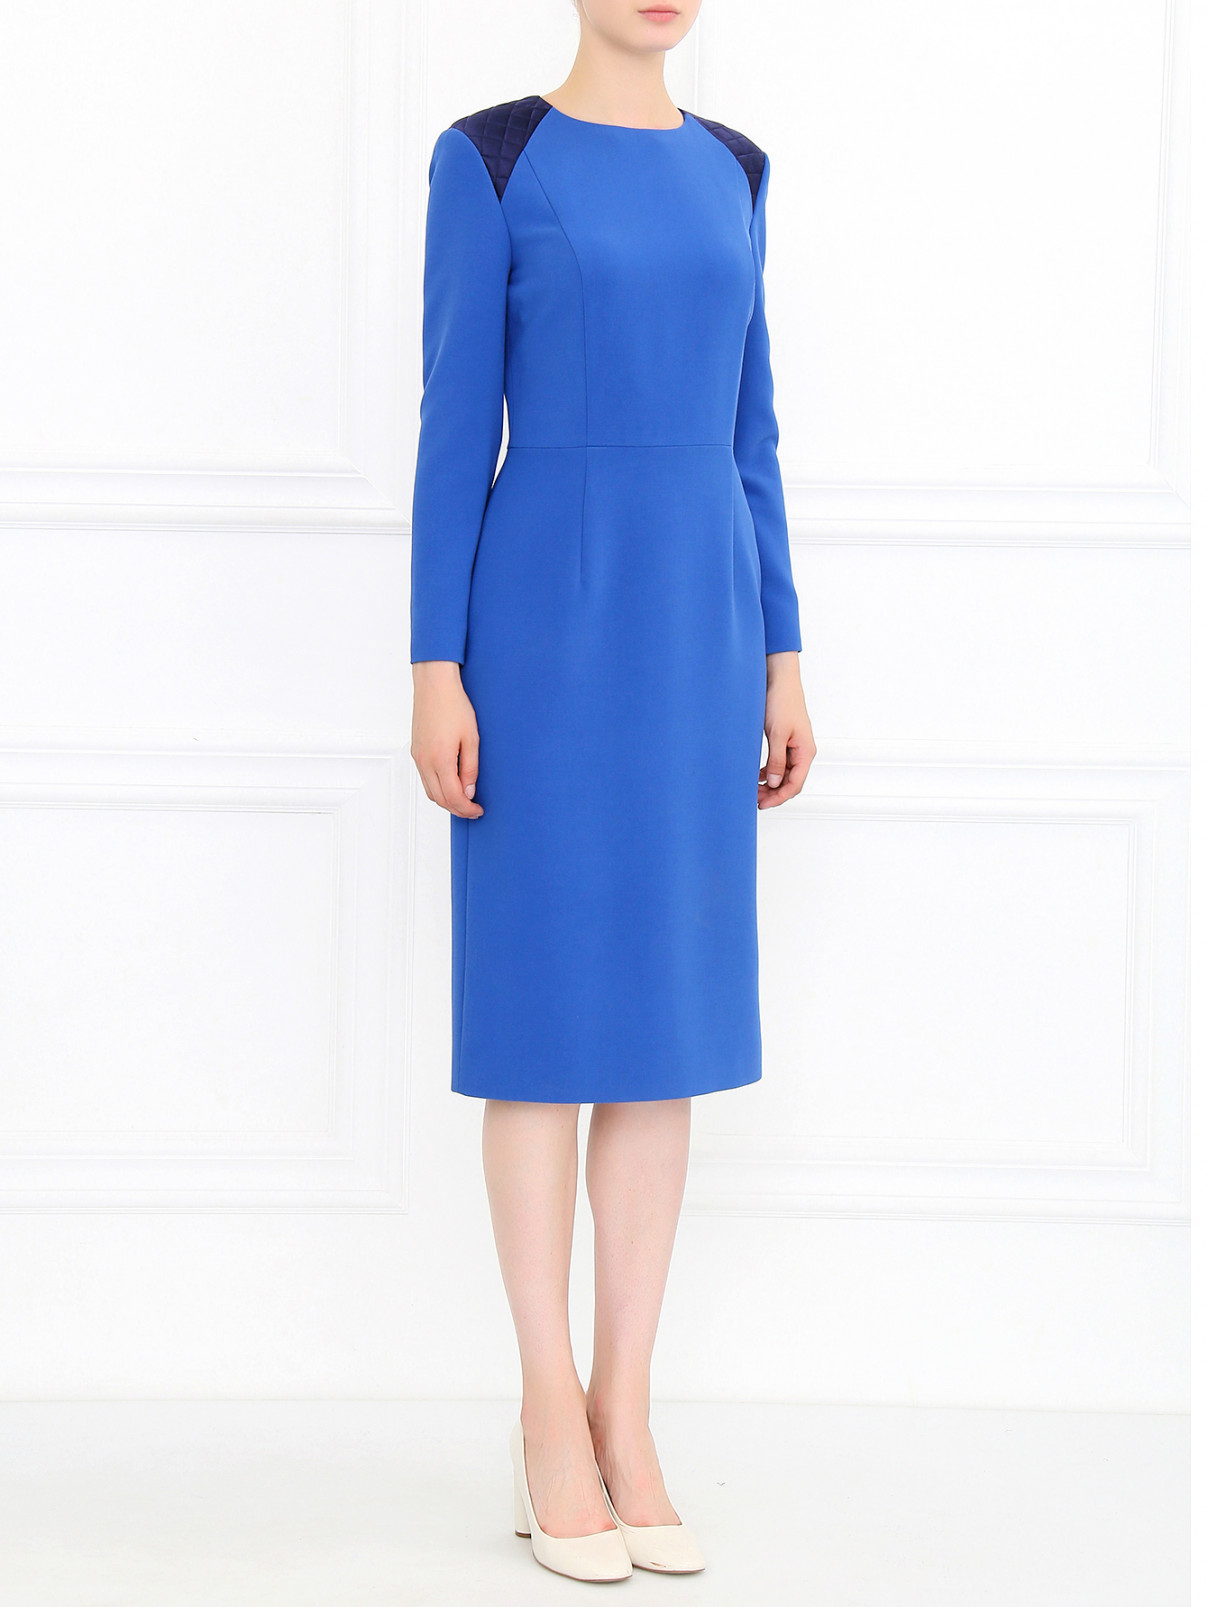 Платье-футляр из шерсти A La Russe  –  Модель Общий вид  – Цвет:  Синий